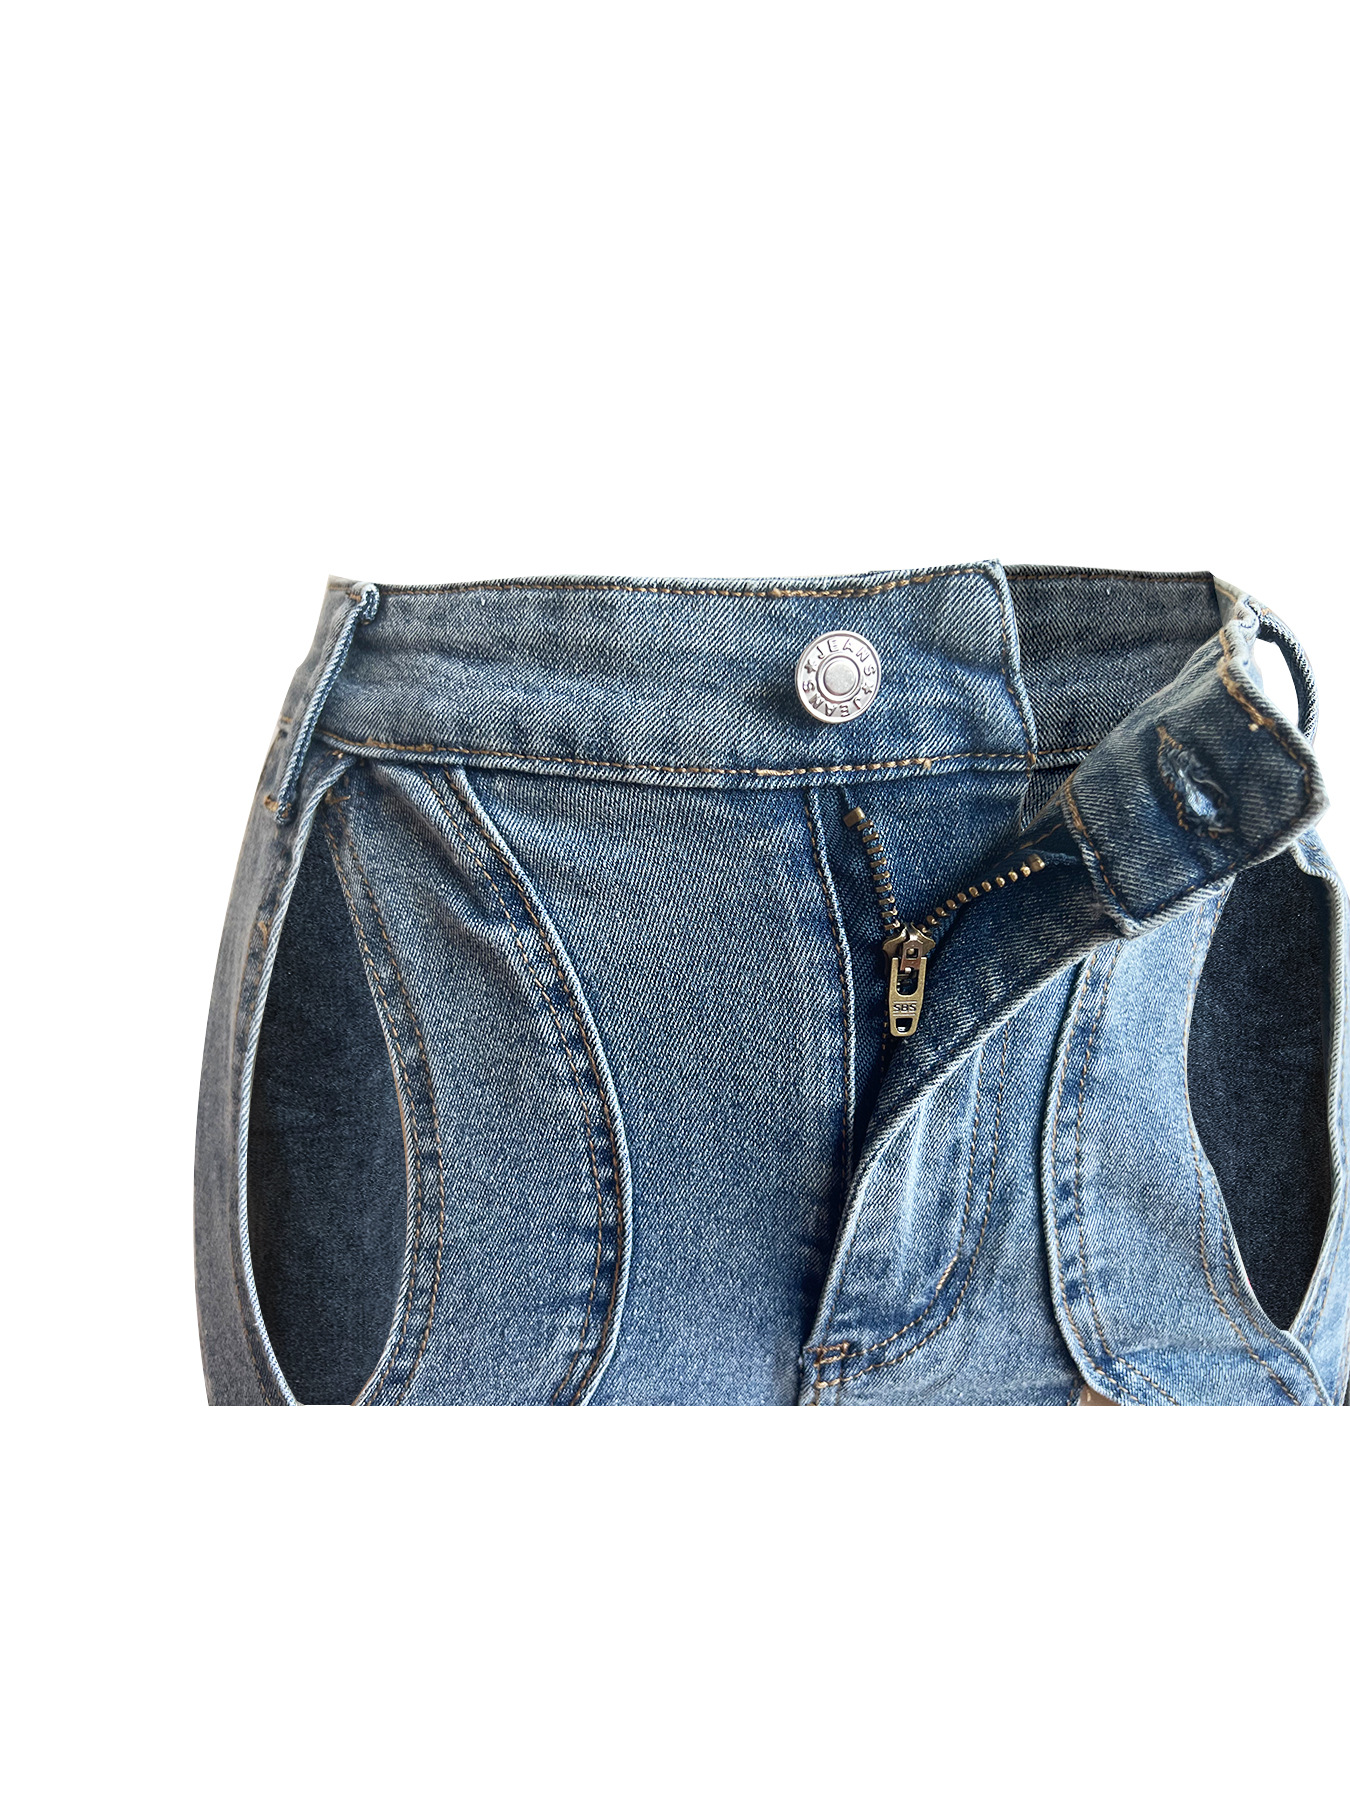 Damen-Jeans mit hoher Taille, trendige, ausgehöhlte, kreuz und quer verlaufende, weit geschnittene Baggy-Jeanshose mit geradem Bein